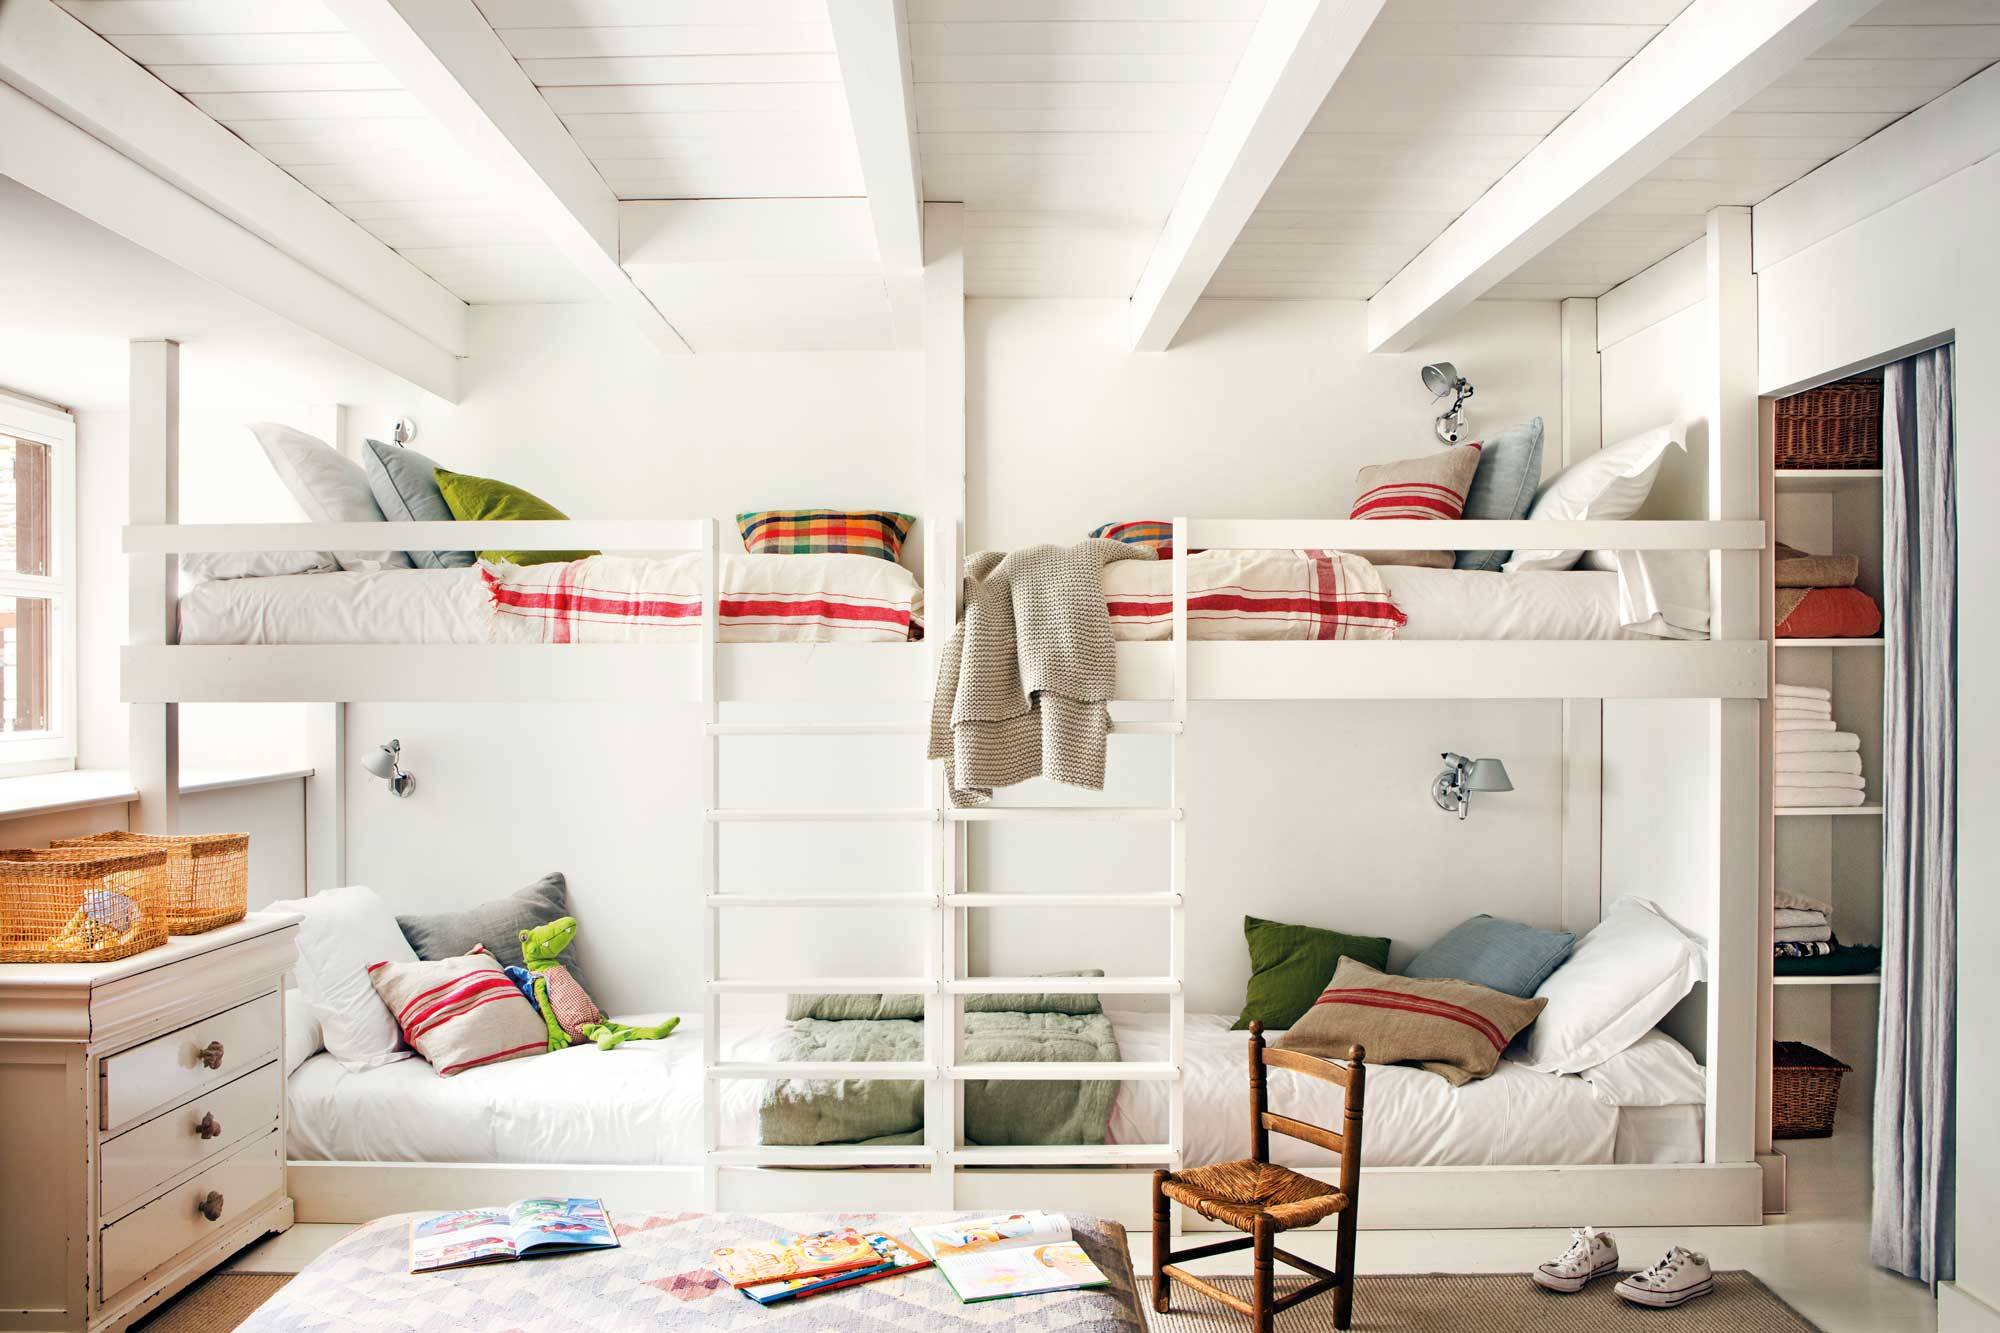 Habitación infantil con varias camas litera en blanco y cojines de colores. 